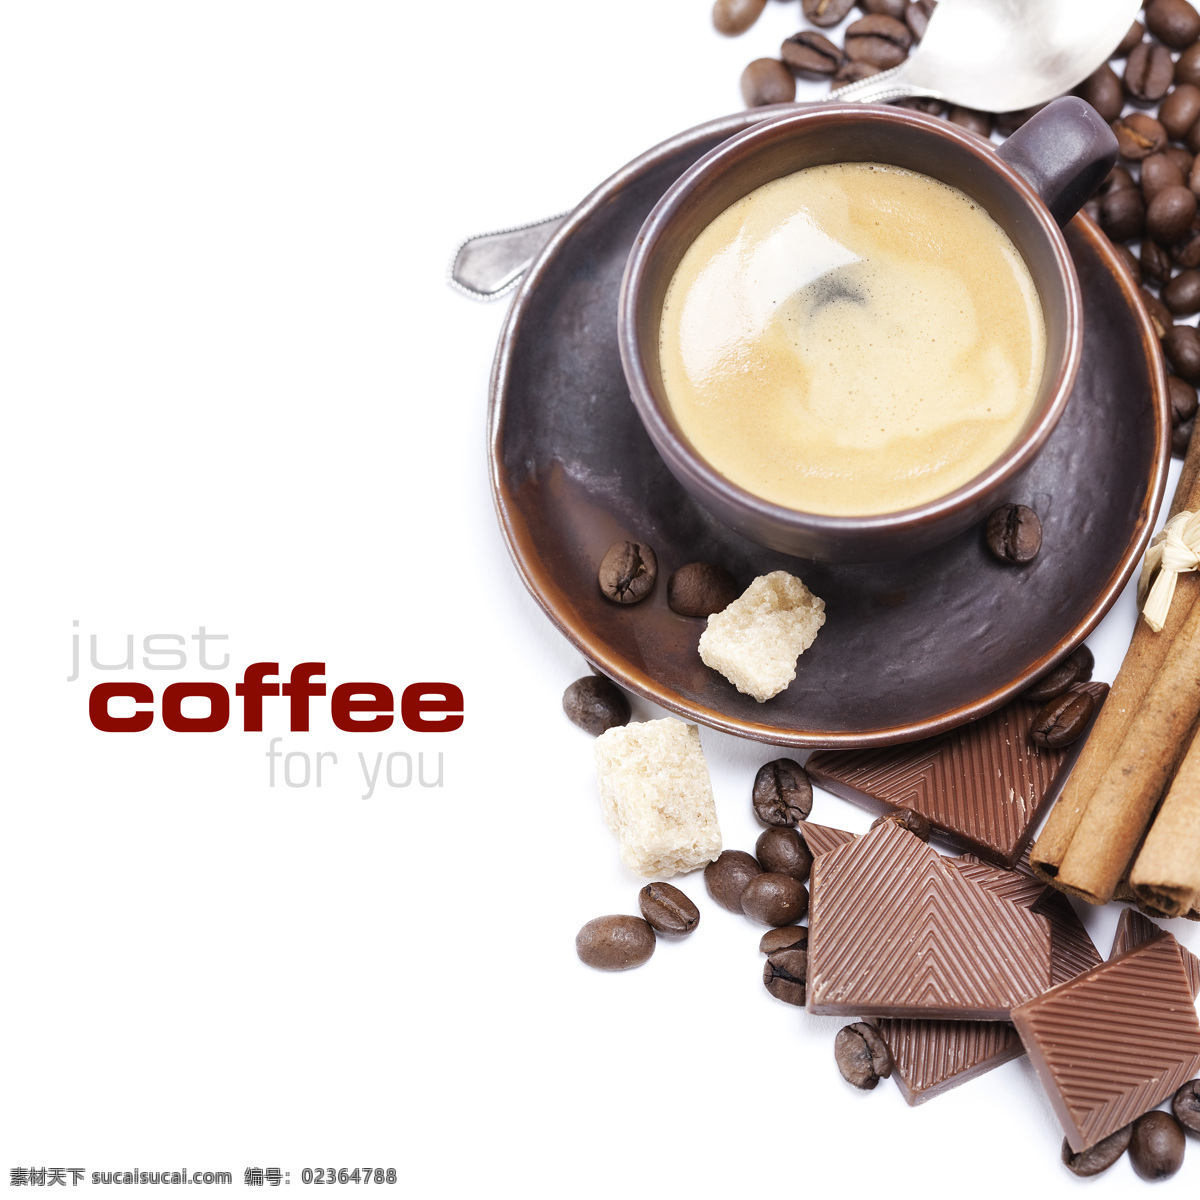 咖啡图 咖啡豆 咖啡杯 巧克力 咖啡糖 咖啡摄影 饮料酒水 餐饮美食